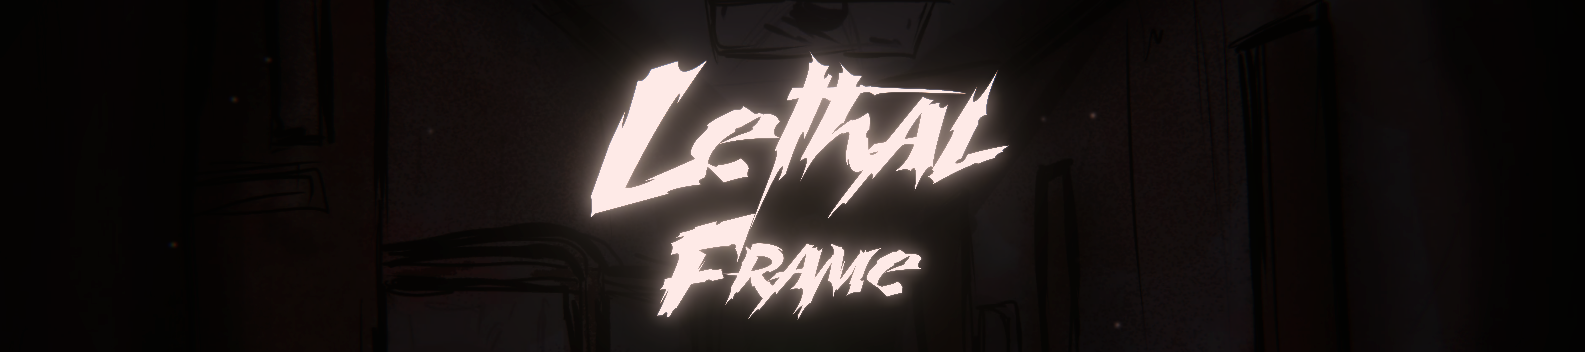 Lethal Frame